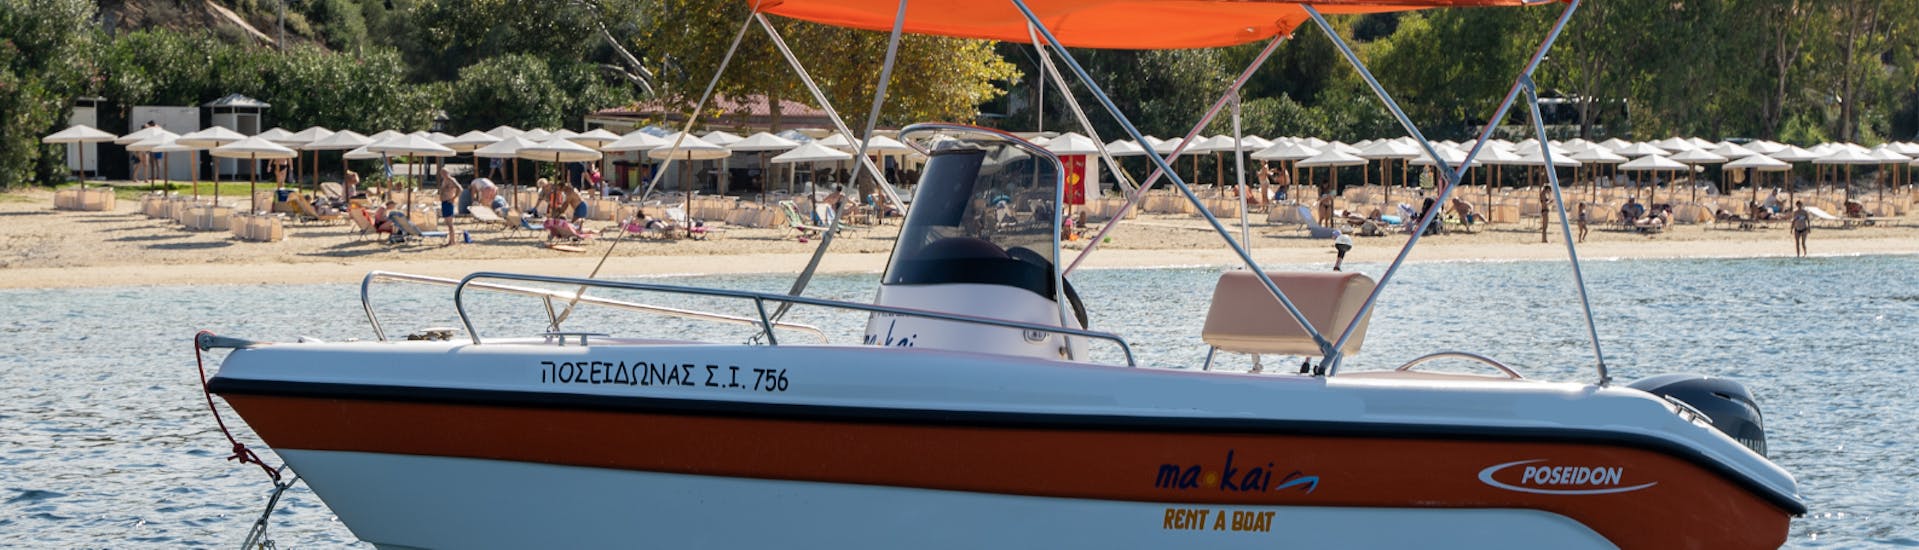 Notre bateau sur l'eau lors de la Location de bateau à Ouranoupoli (jusqu'à 6 personnes) sans Permis avec Poseidon Watersports Ouranoupoli.